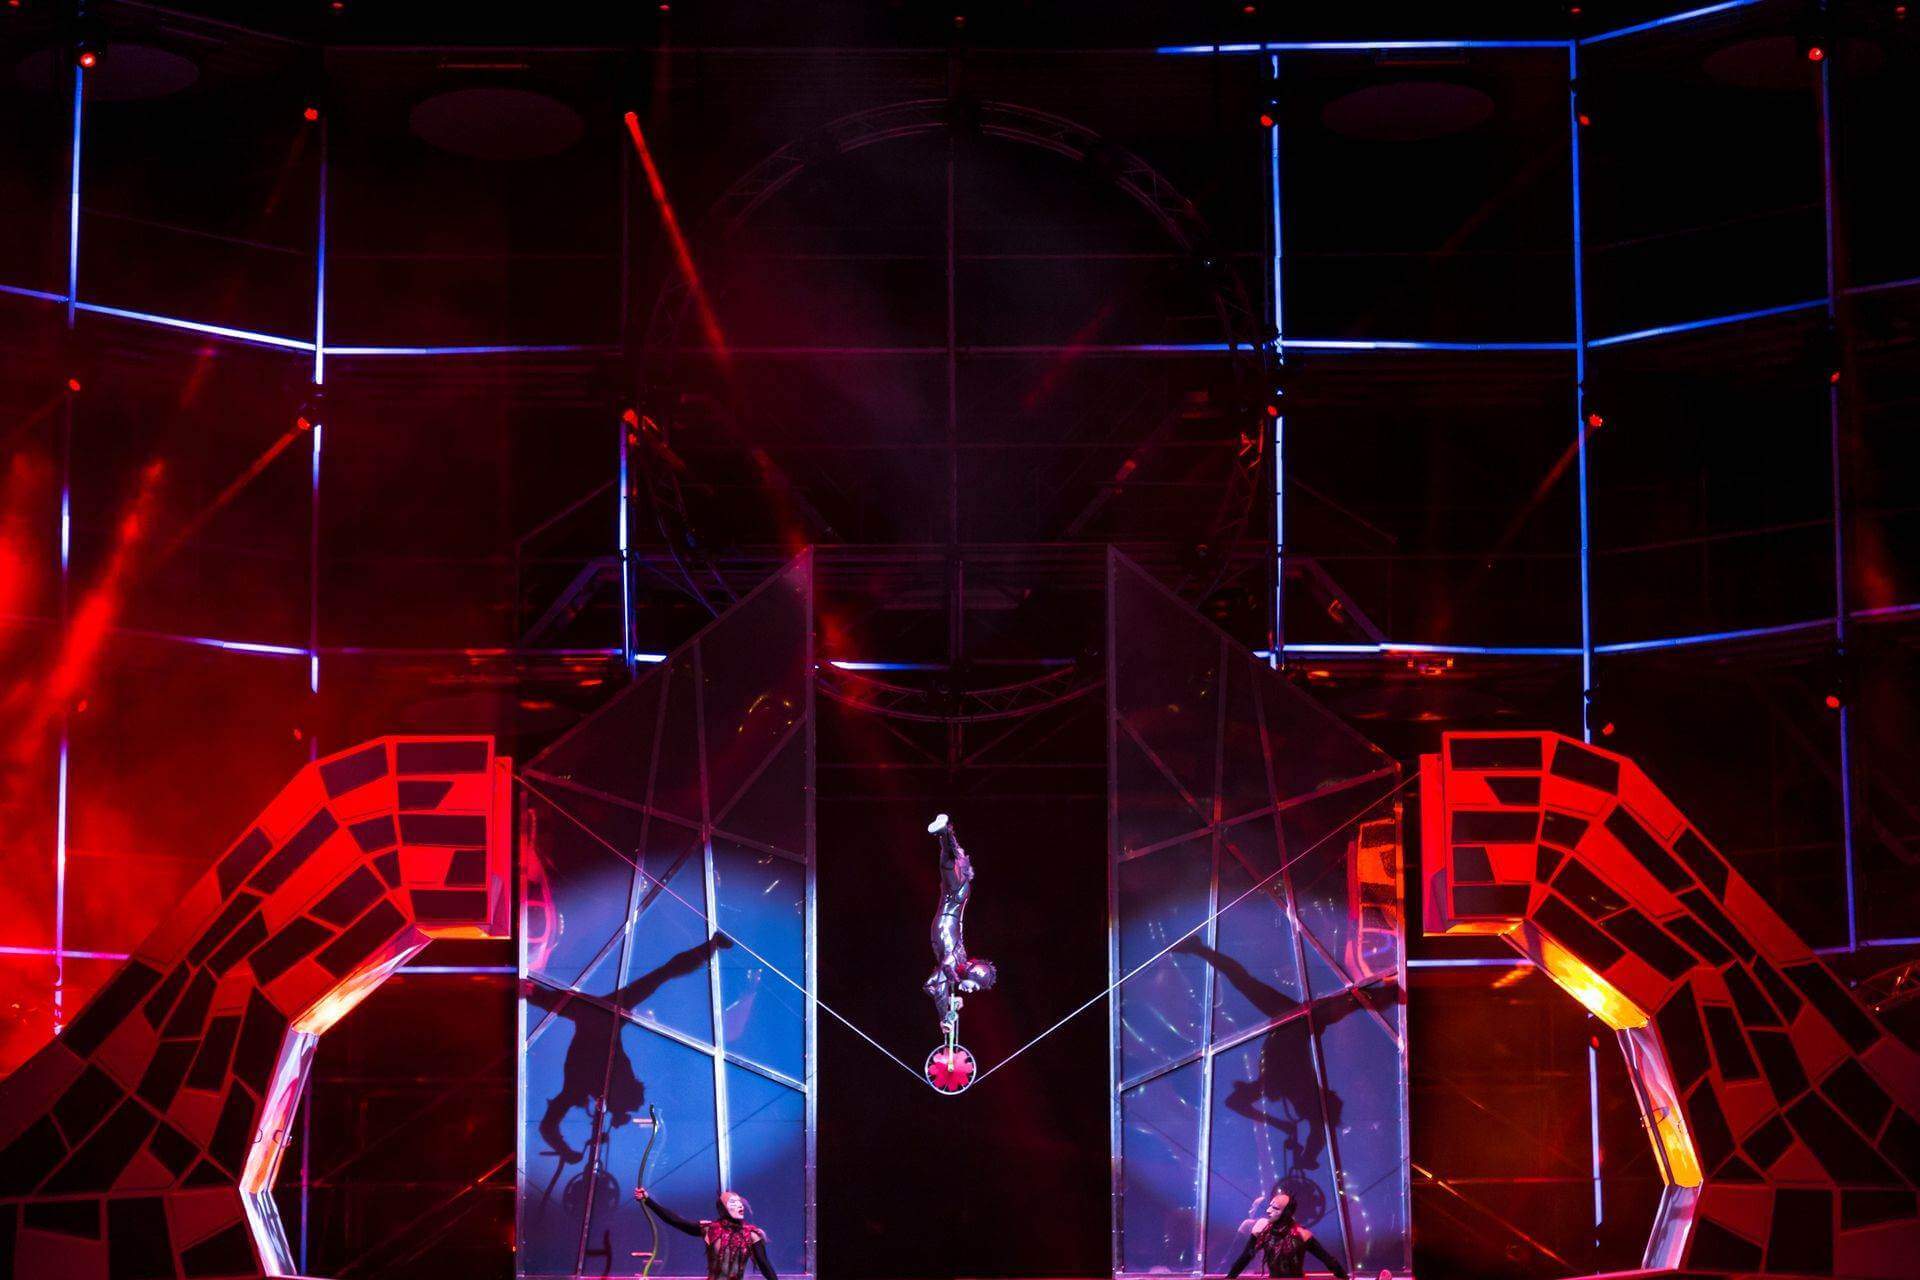 Scalada - Storia by Cirque du Soleil 2015 : acrobatie en monocycle sur corde raide